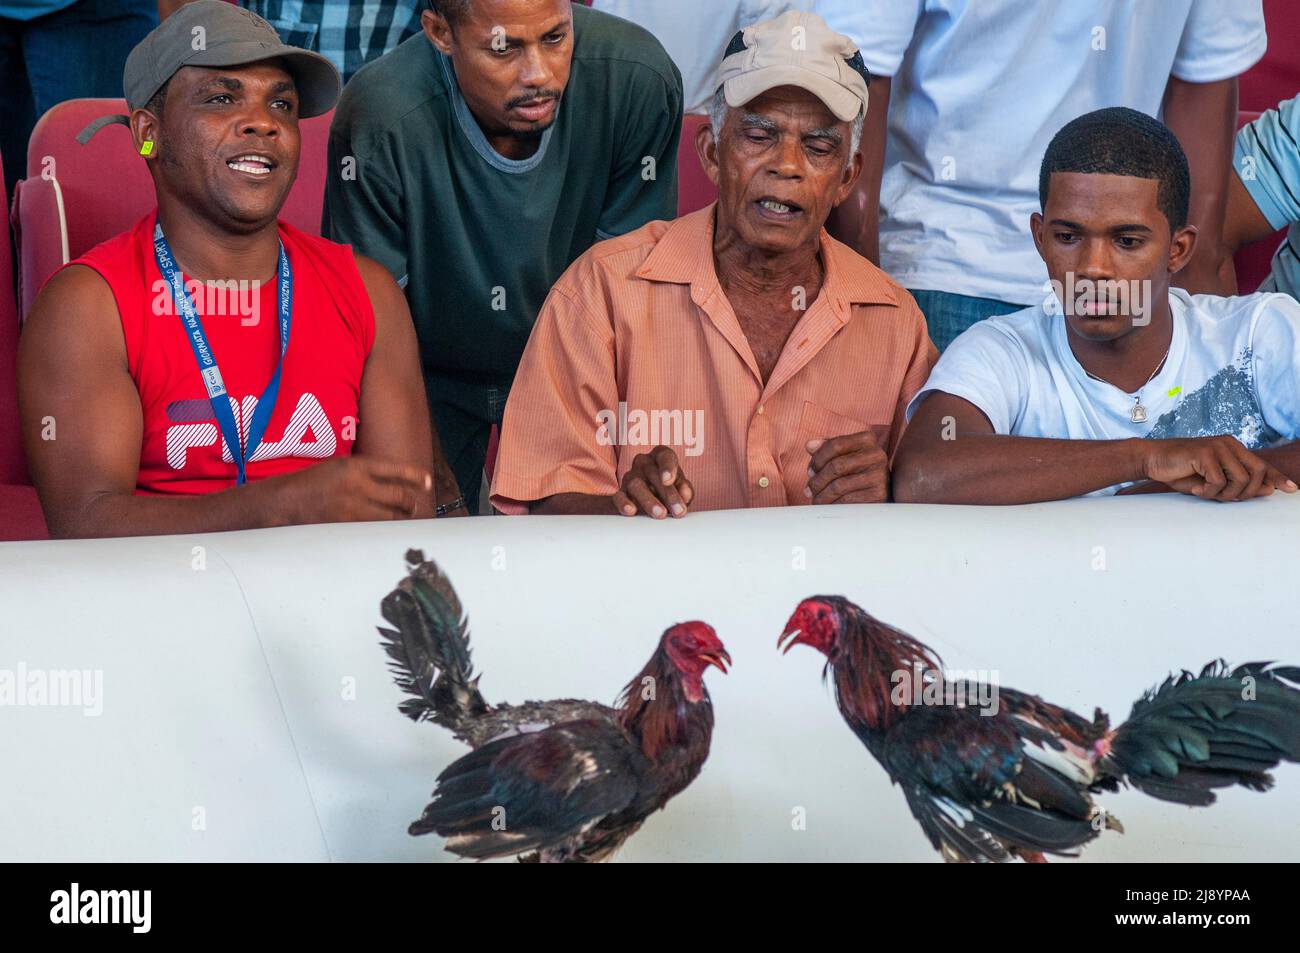 La lucha de gallos juega un papel importante en la península de Samana, en República Dominicana, cerca de la ciudad de Las Terrenas, hay peleas de gallos domingos que son generalmente él Foto de stock